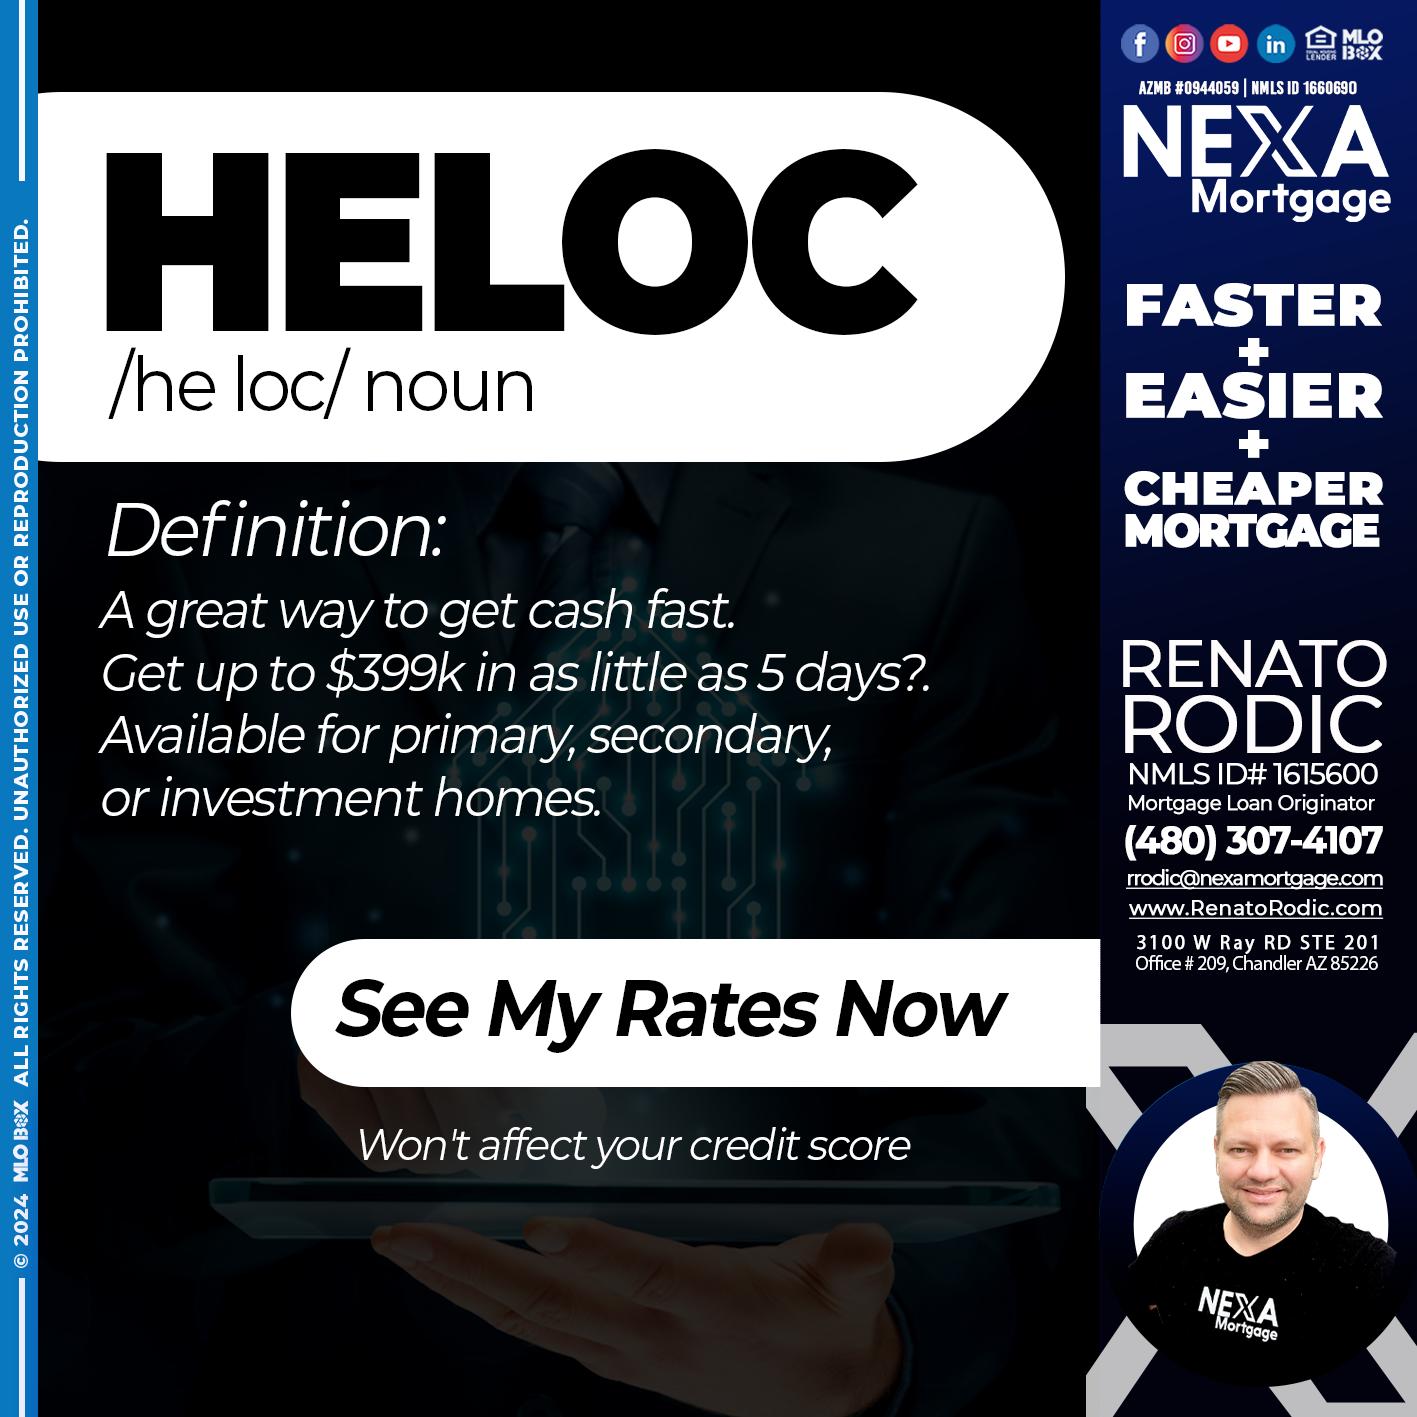 HELOC - Renato Rodic -Mortgage Loan Originator